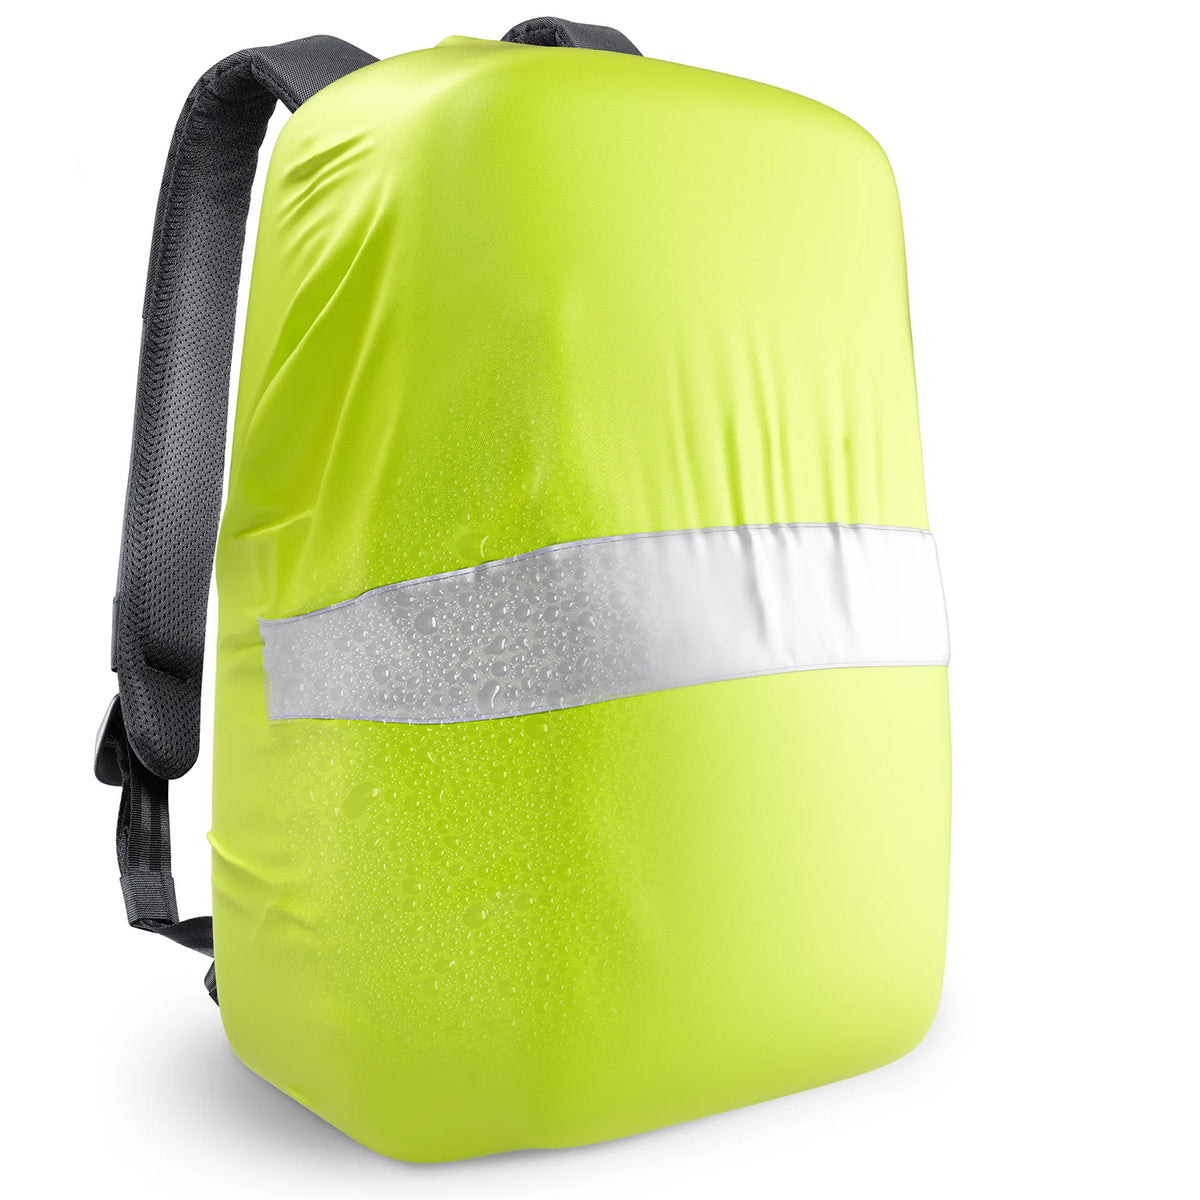 Regenschutz für Rucksack & Schulranzen - wasserdicht